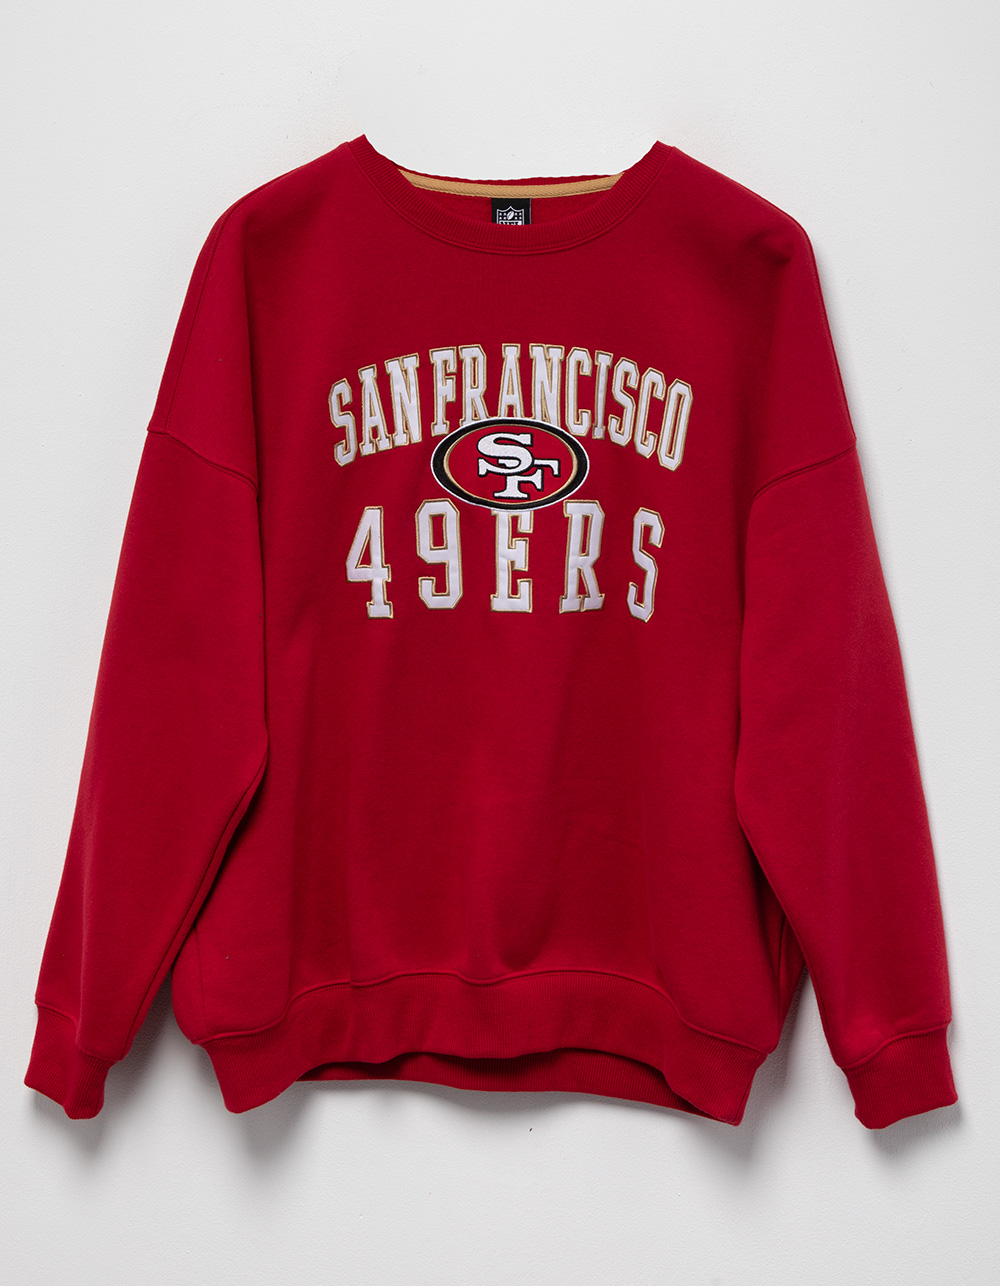 Women's San Francisco 49ers Graphic Crew Sweatshirt, Women's New Arrivals